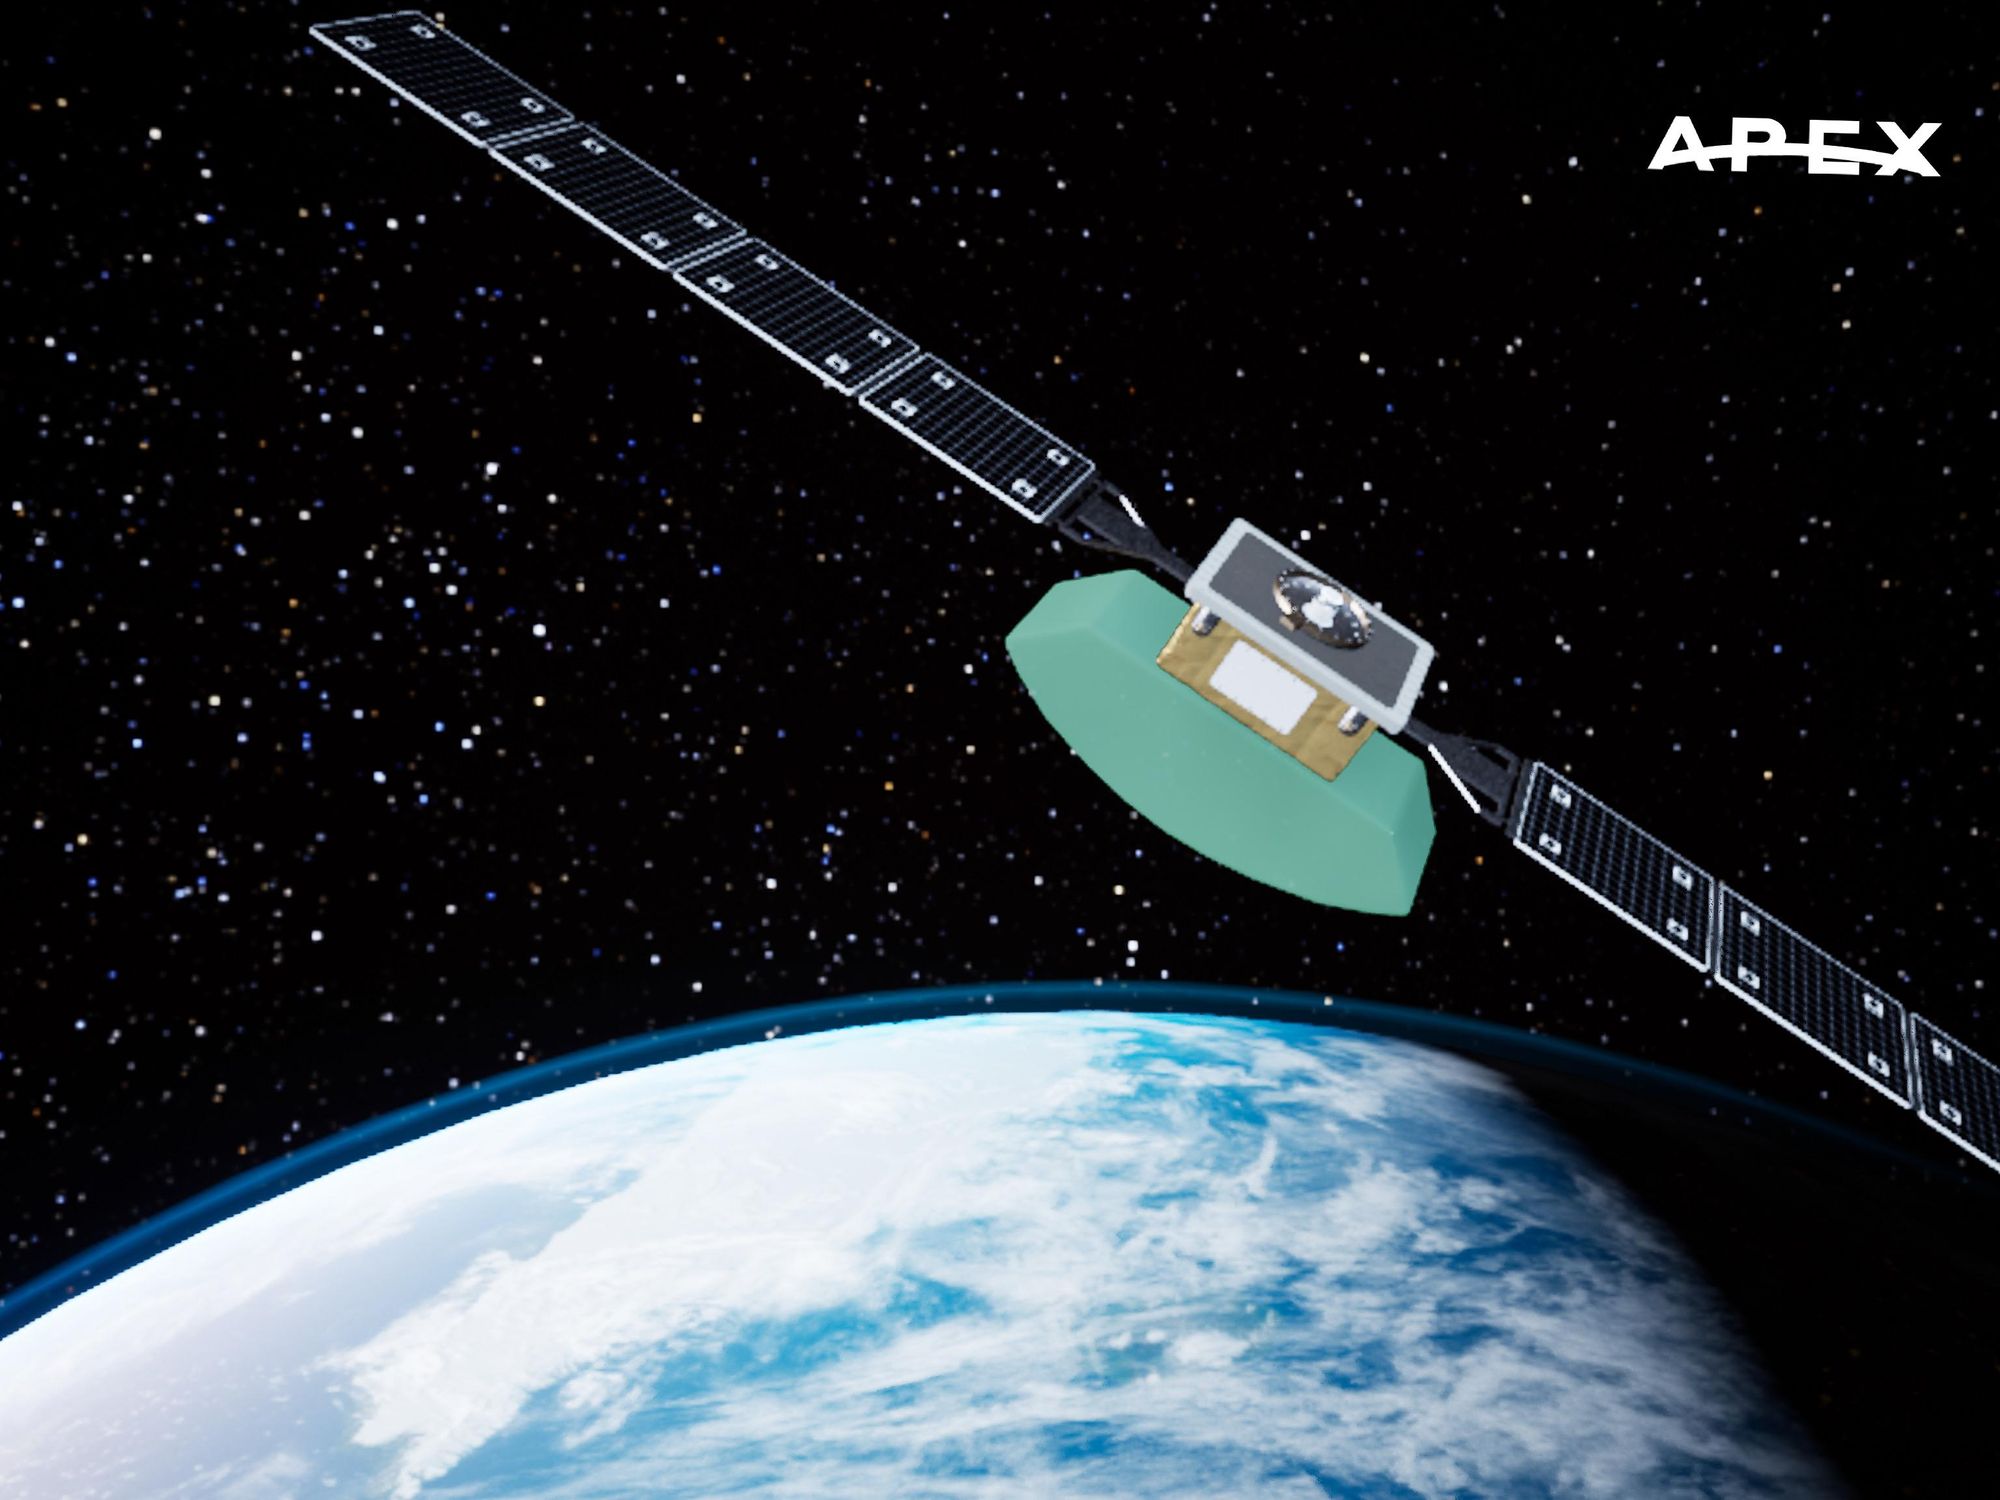 Apex Space Raises $7.5M to Manufacture Small Satellites in LA